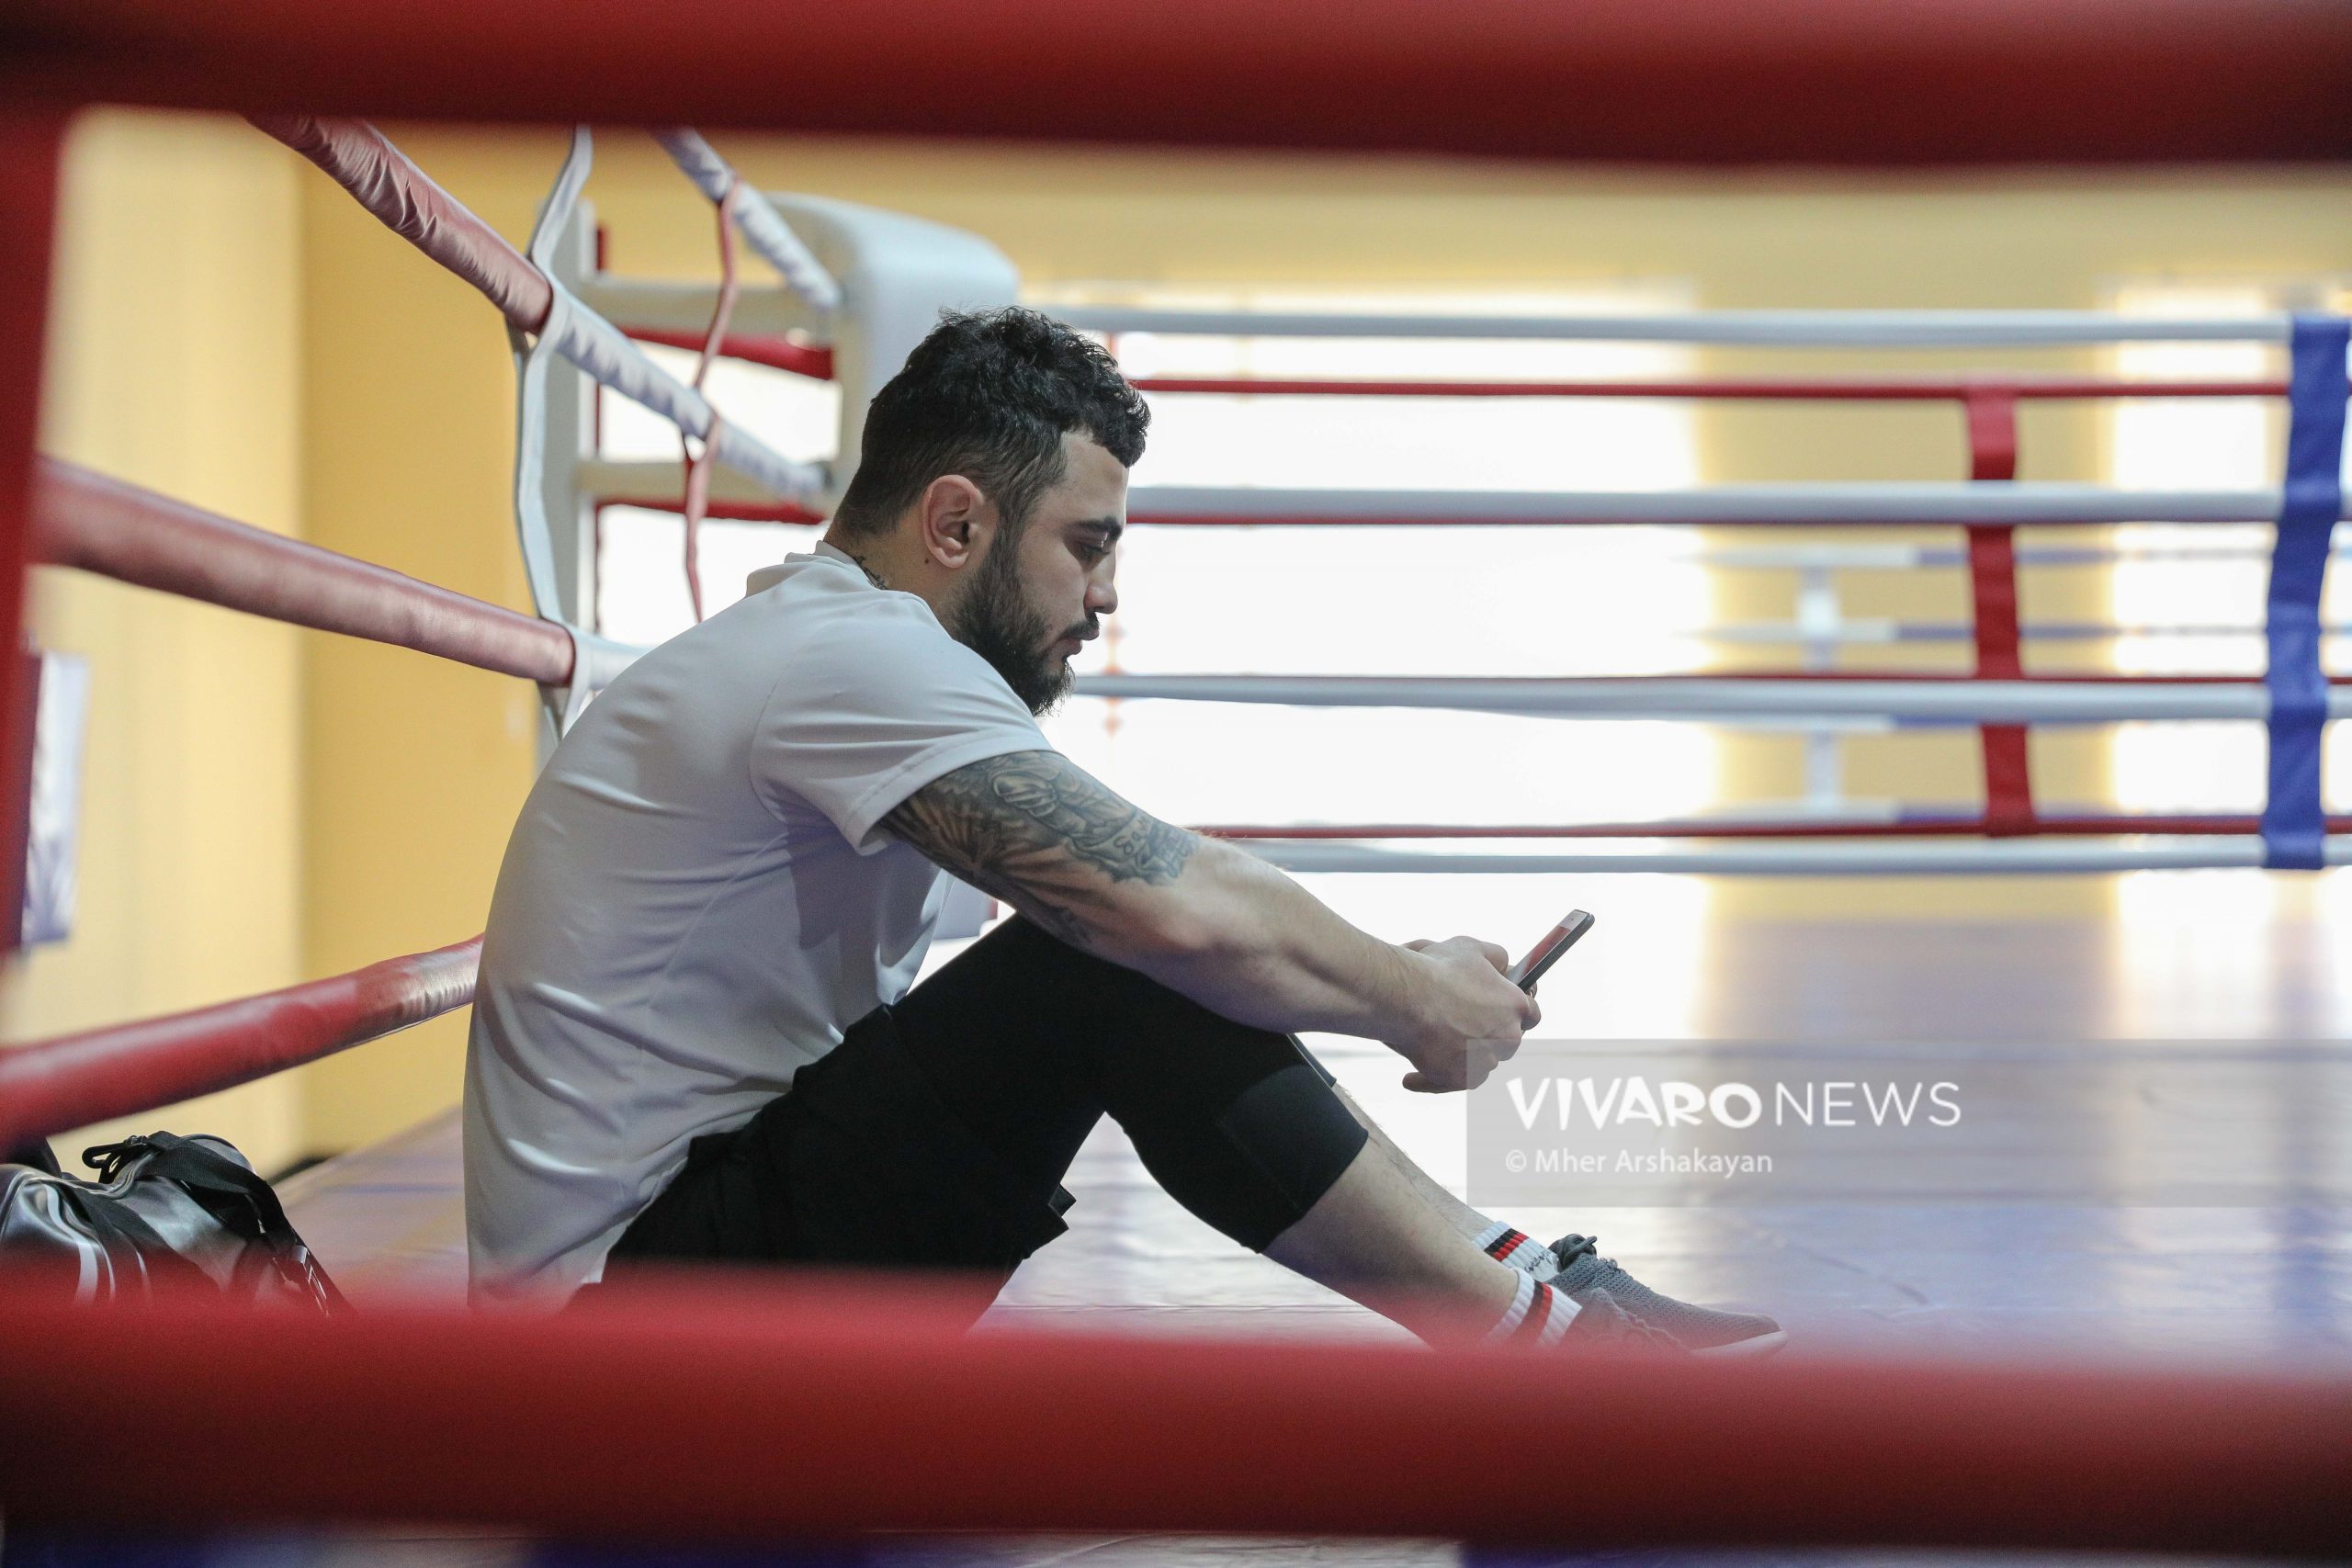 boxing training 11 scaled - Դեպի տարվա առաջին քննություն. հայ բռնցքամարտիկների մարզումը լուսանկարներով